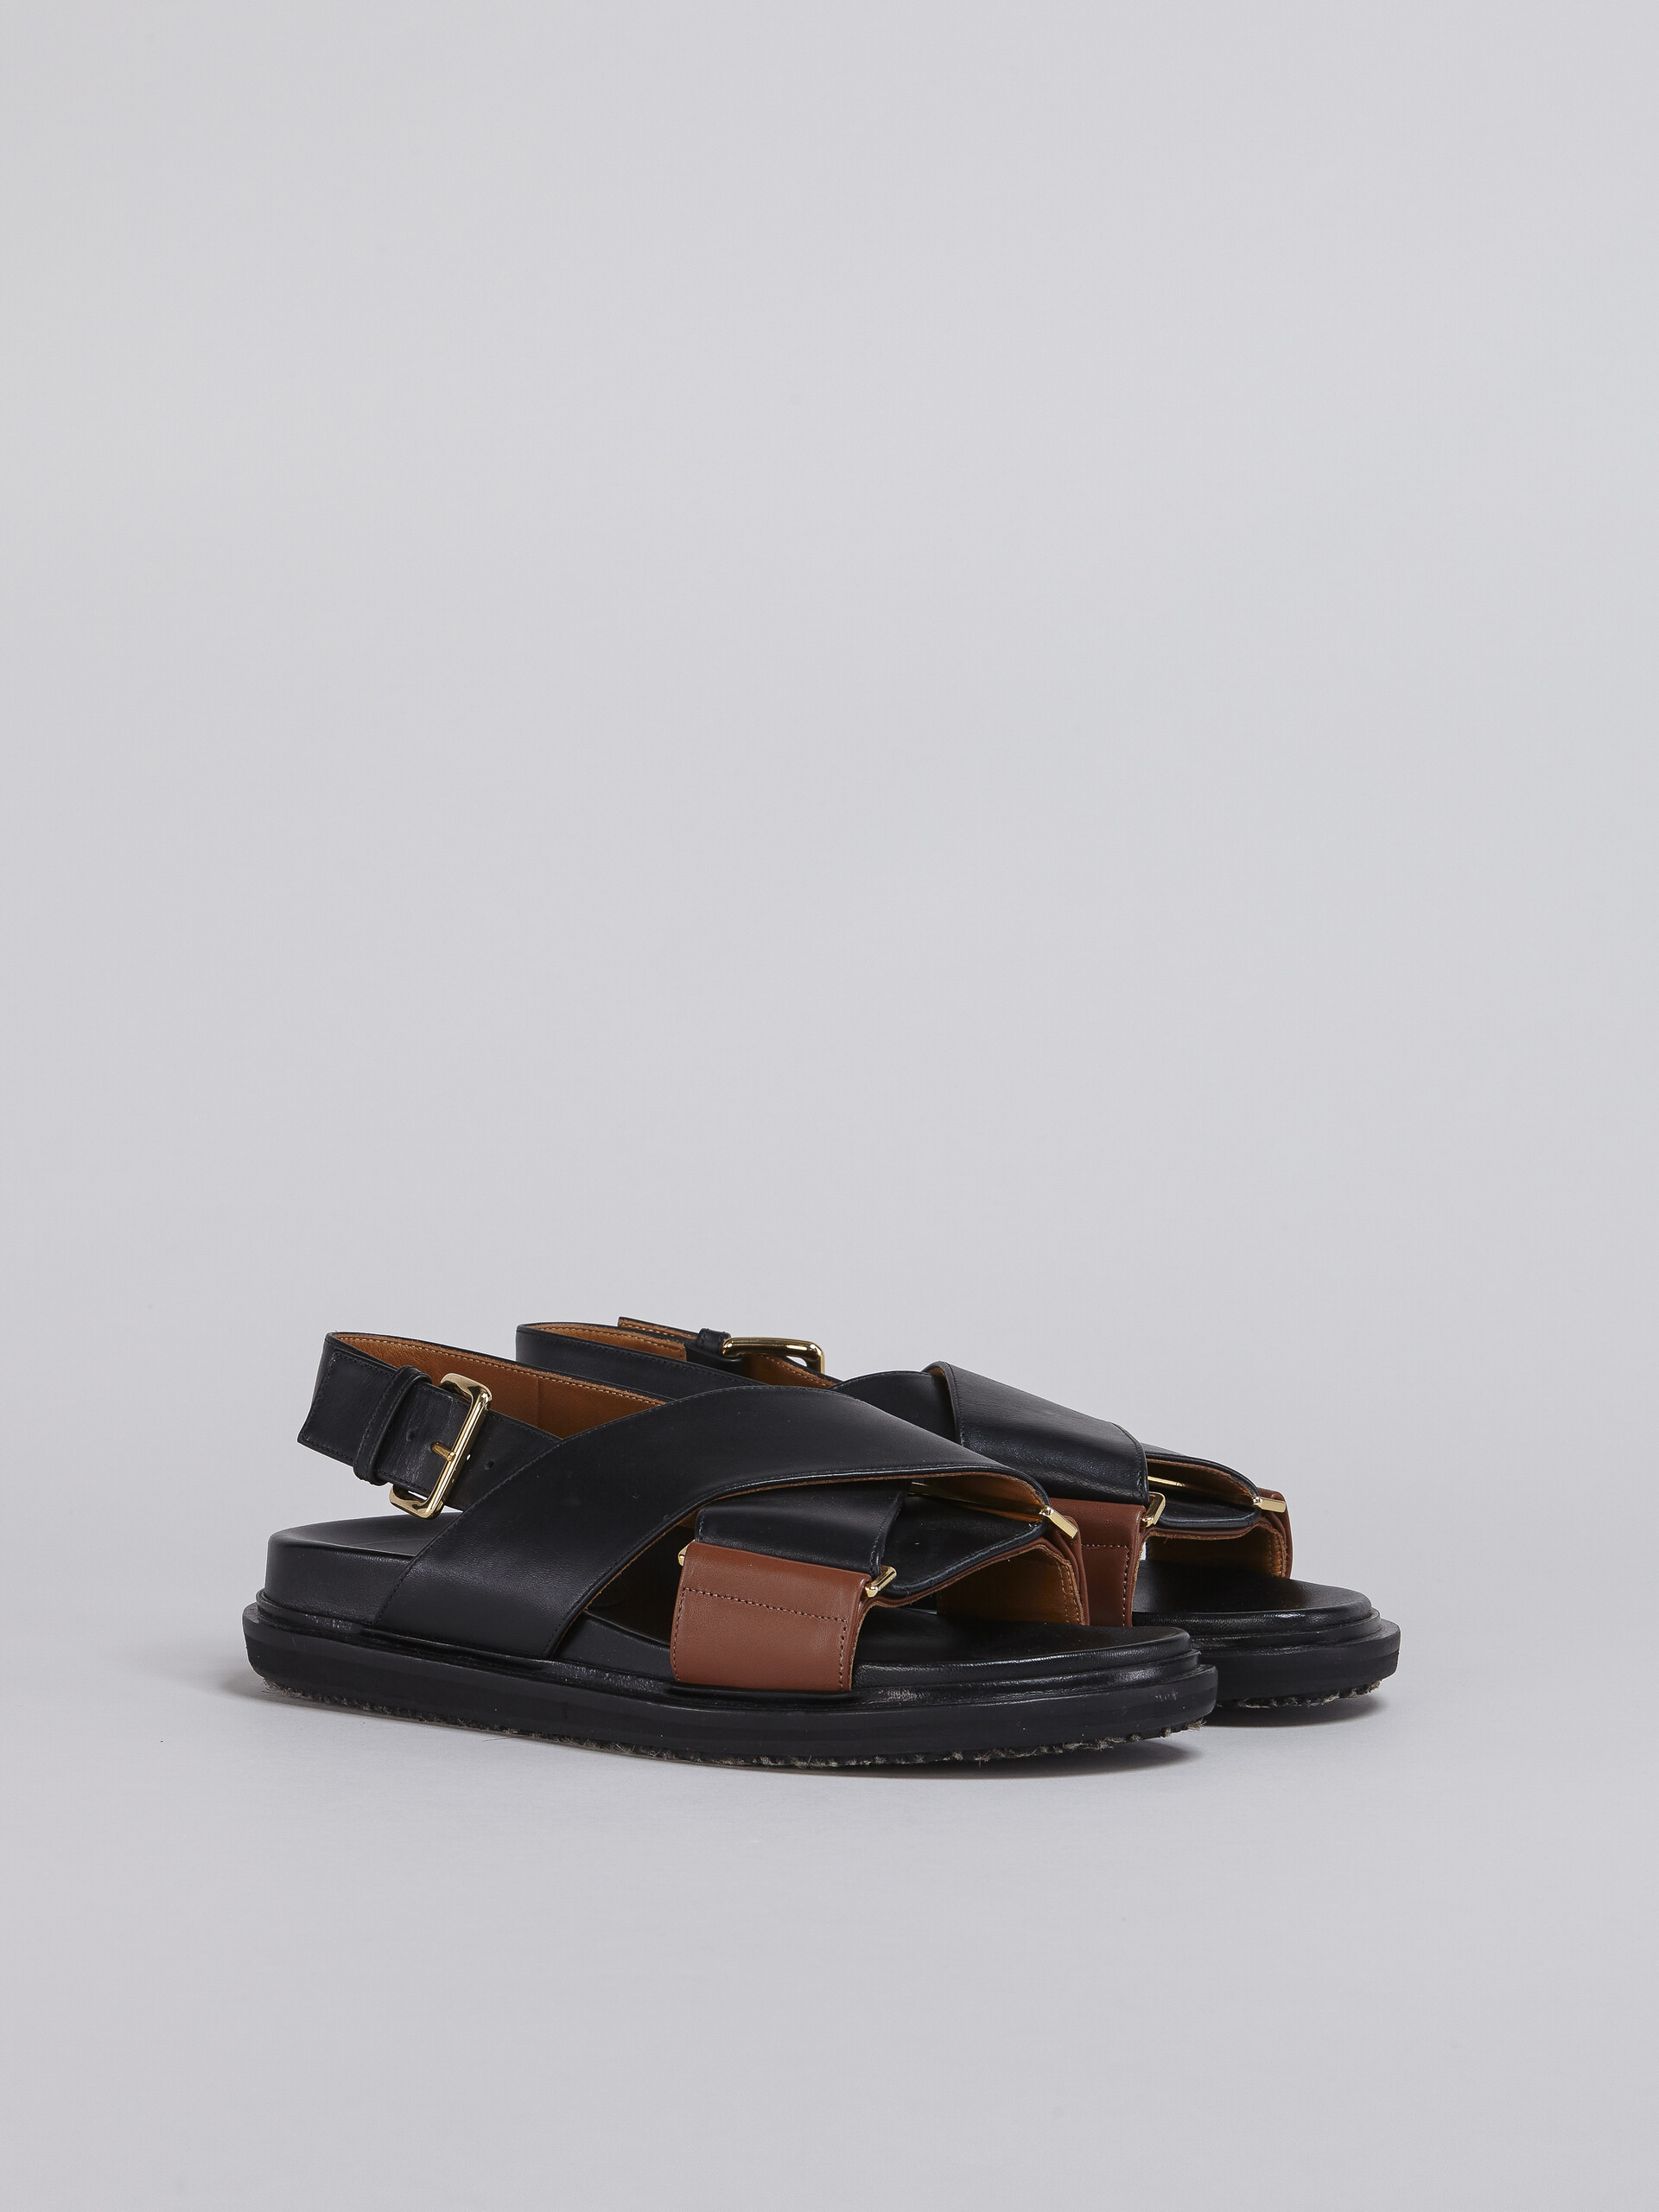 Fußbett-Sandale aus Leder in Schwarz und Braun - Sandalen - Image 2